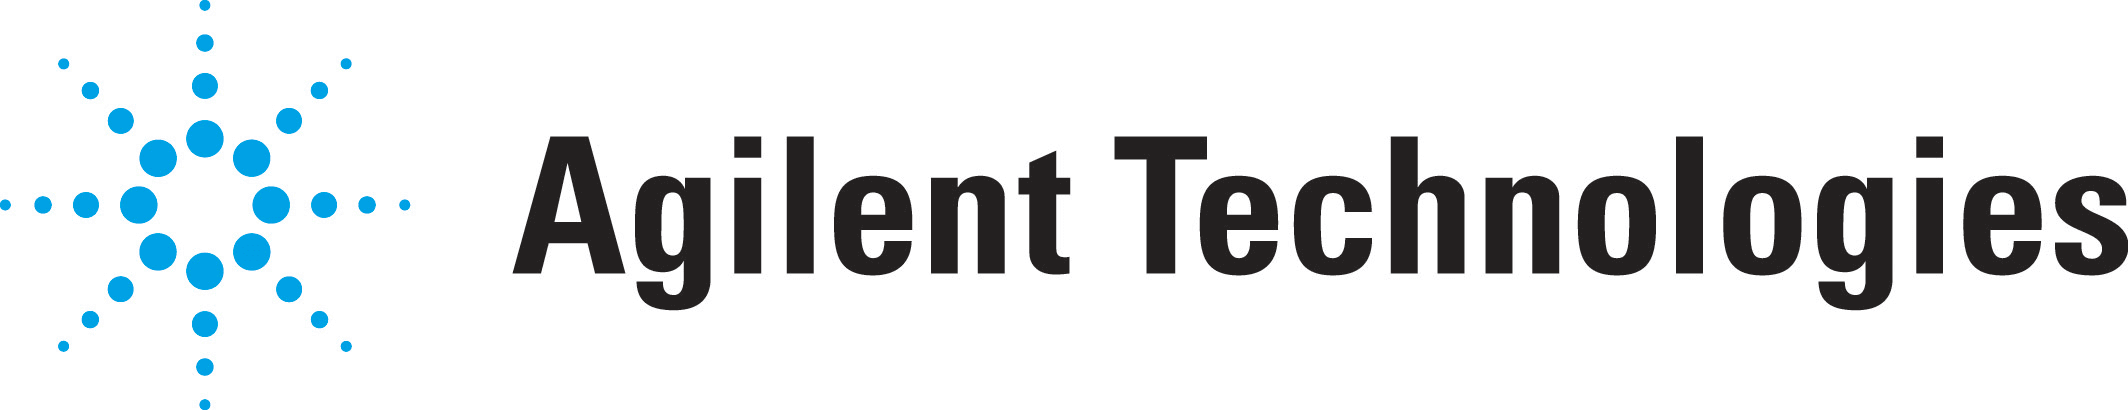 アジレントテクノロジー株式会社-ロゴ